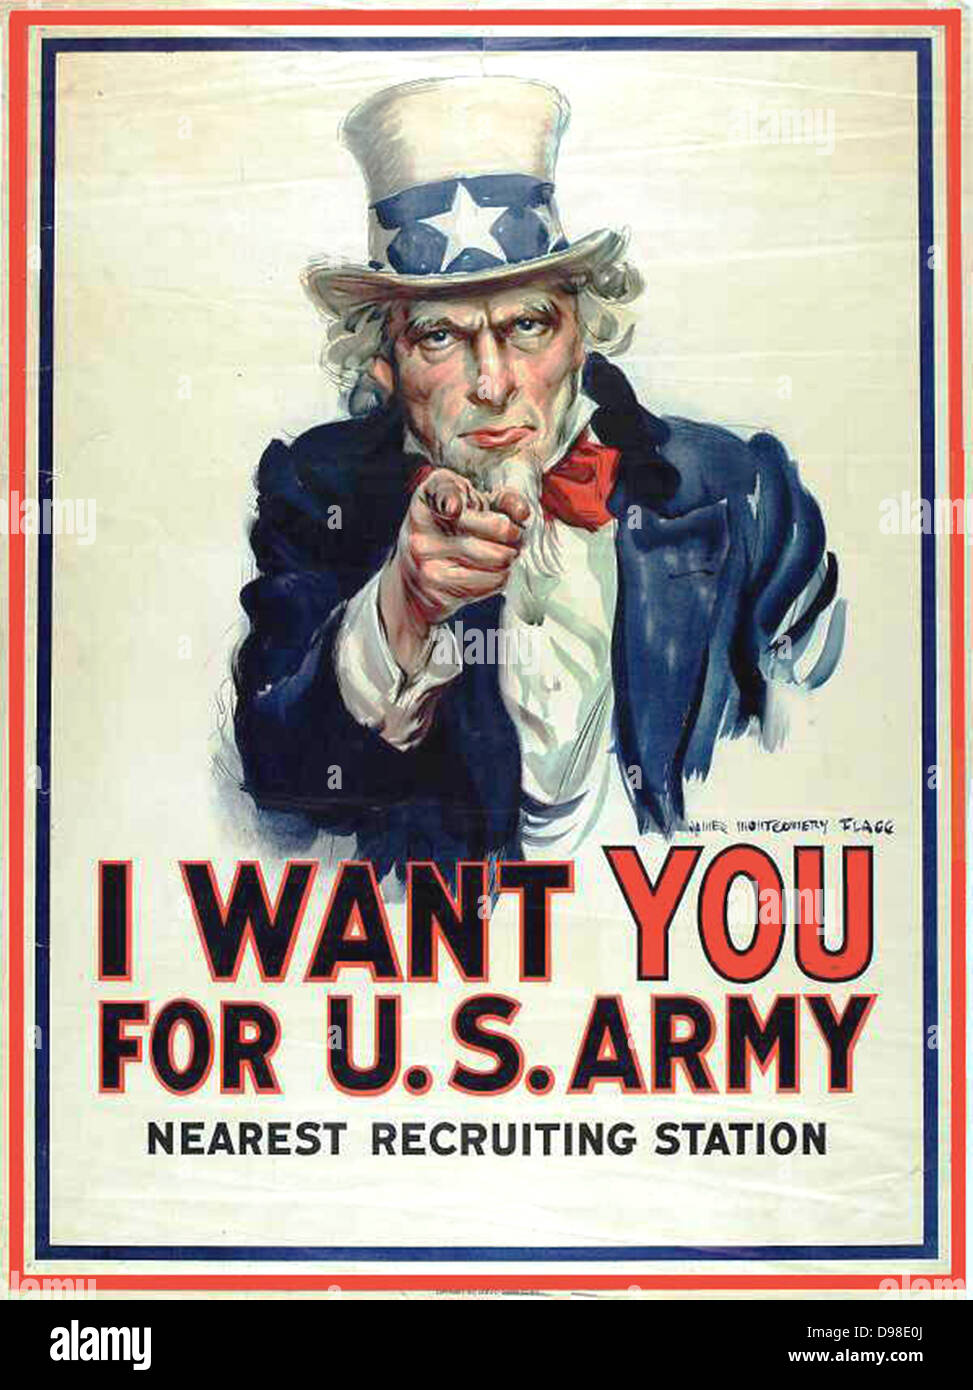 Je veux que vous pour l'armée américaine" : Affiche de recrutement de la Première Guerre mondiale, 1917, montrant l'Oncle Sam pointant son doigt vers l'avant et de faire appel au patriotisme. Banque D'Images